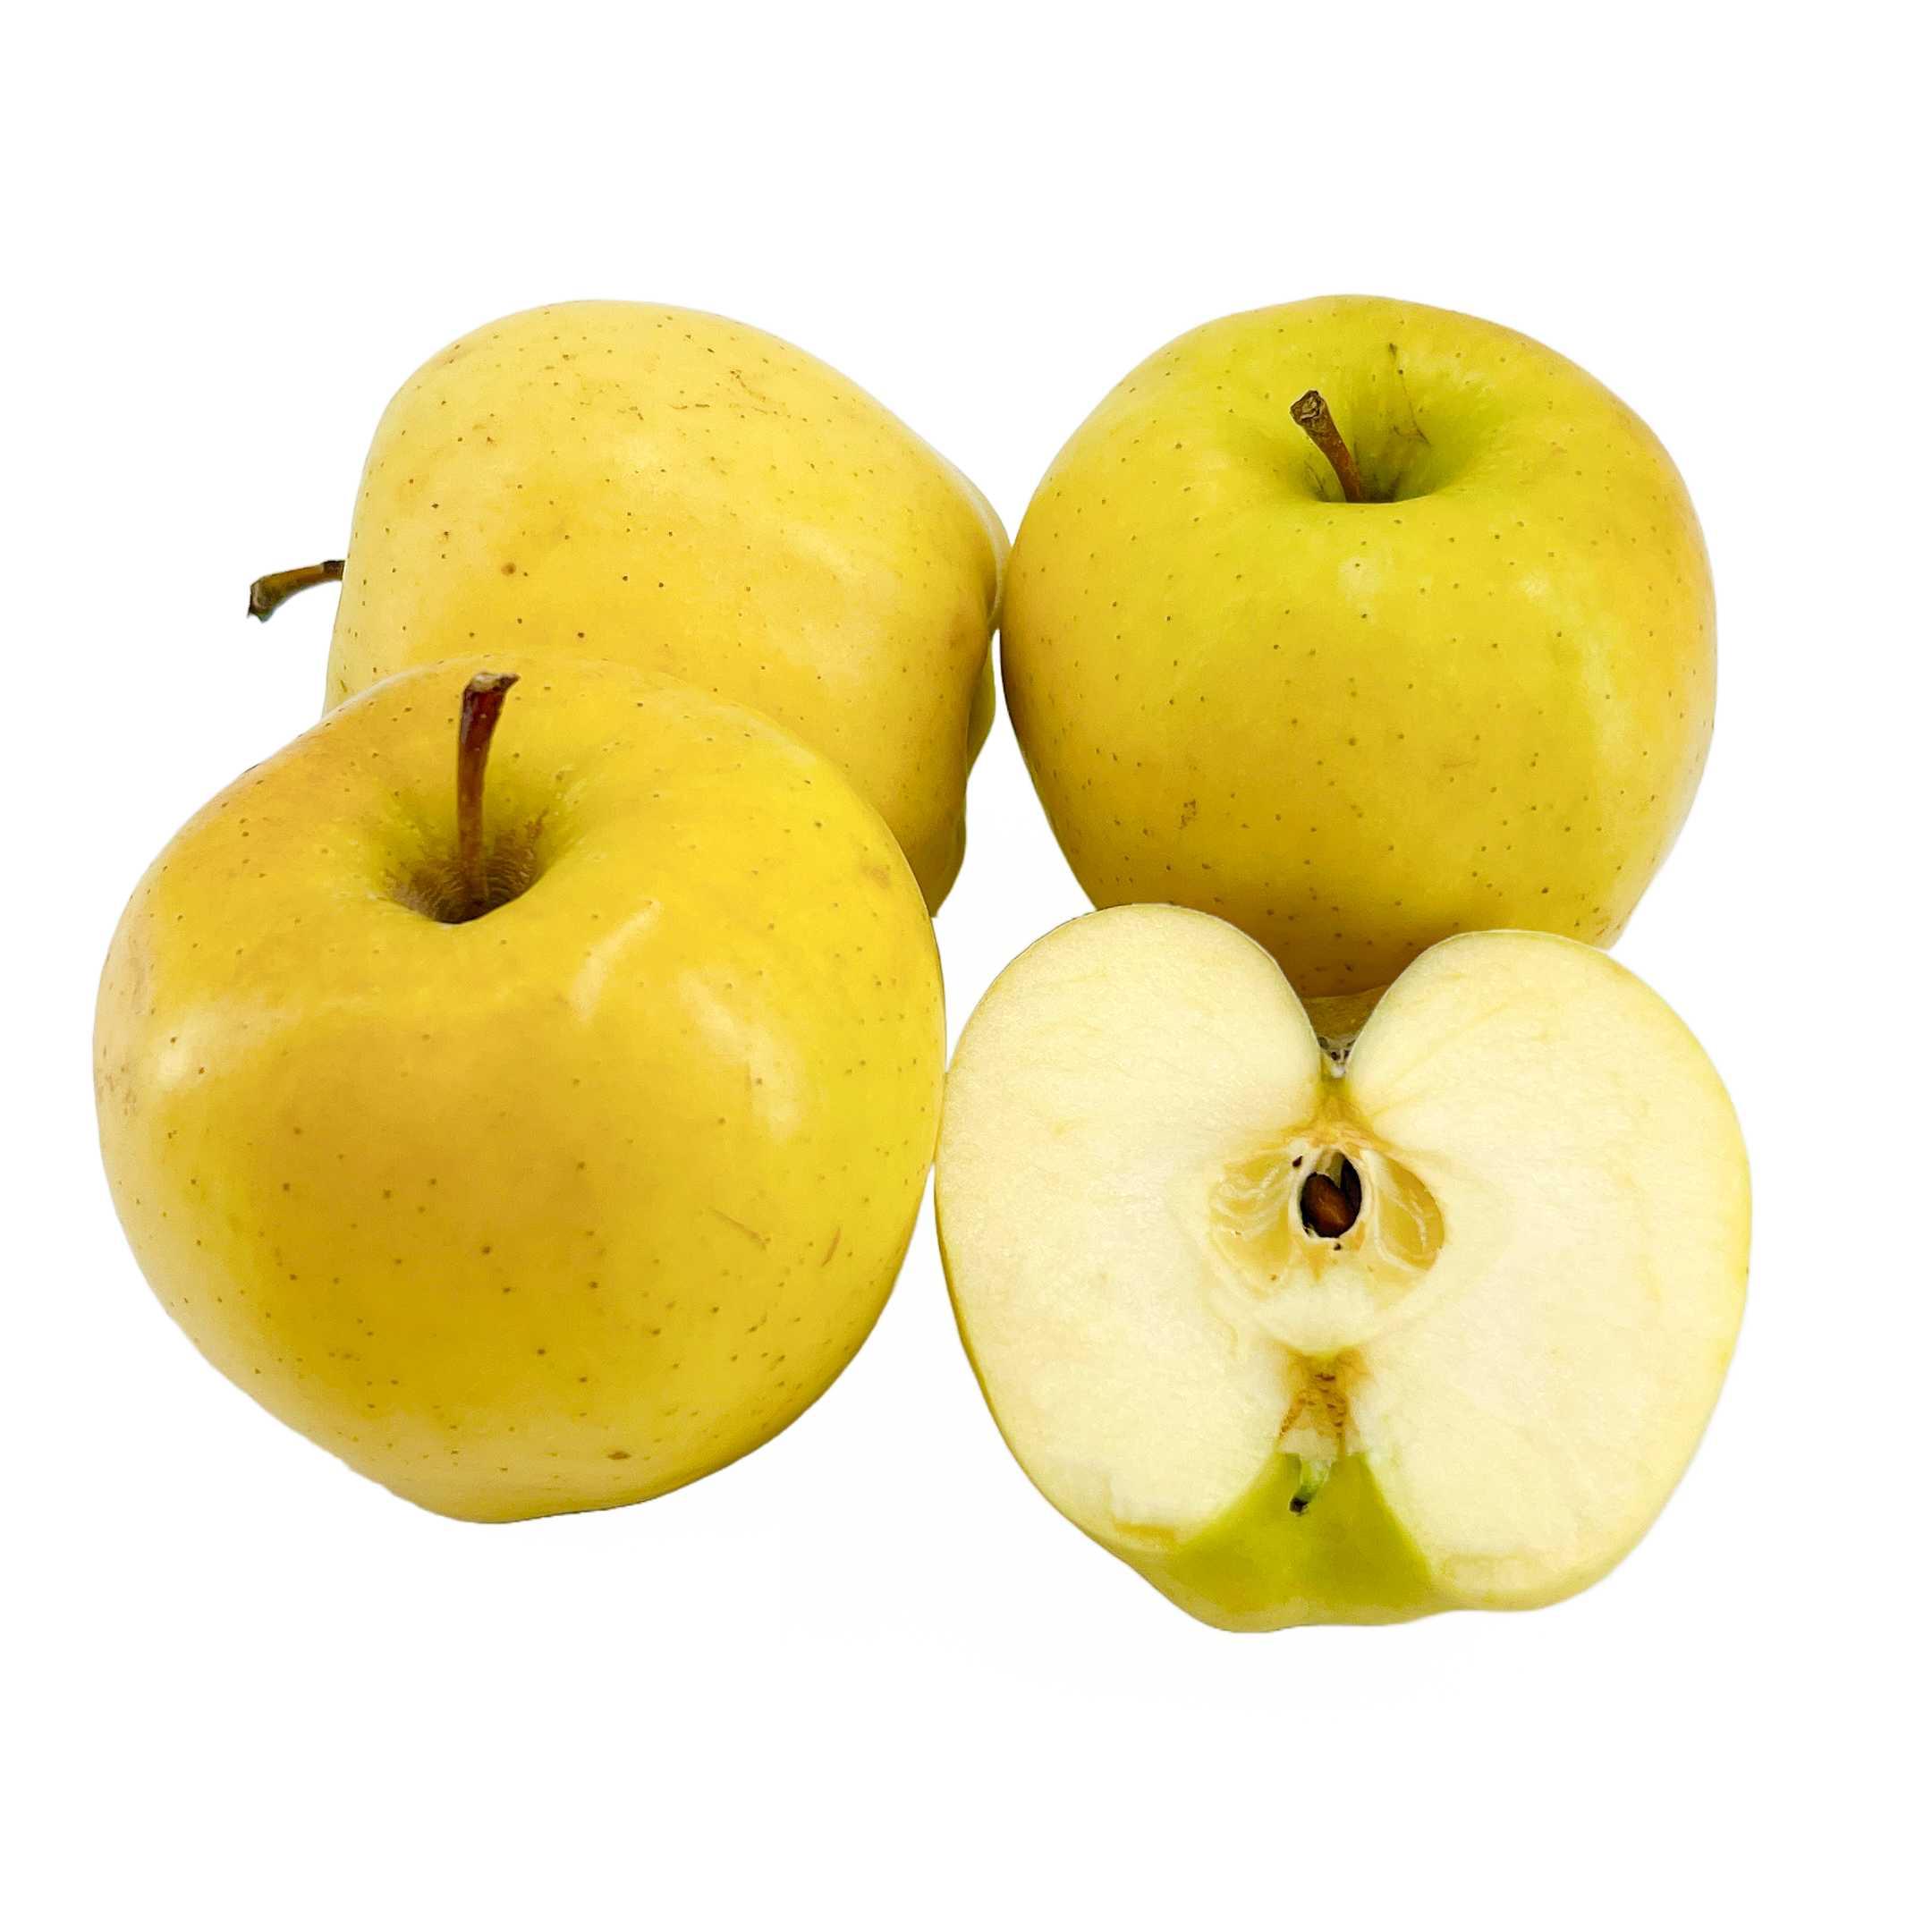 Yellow Delicious Apple